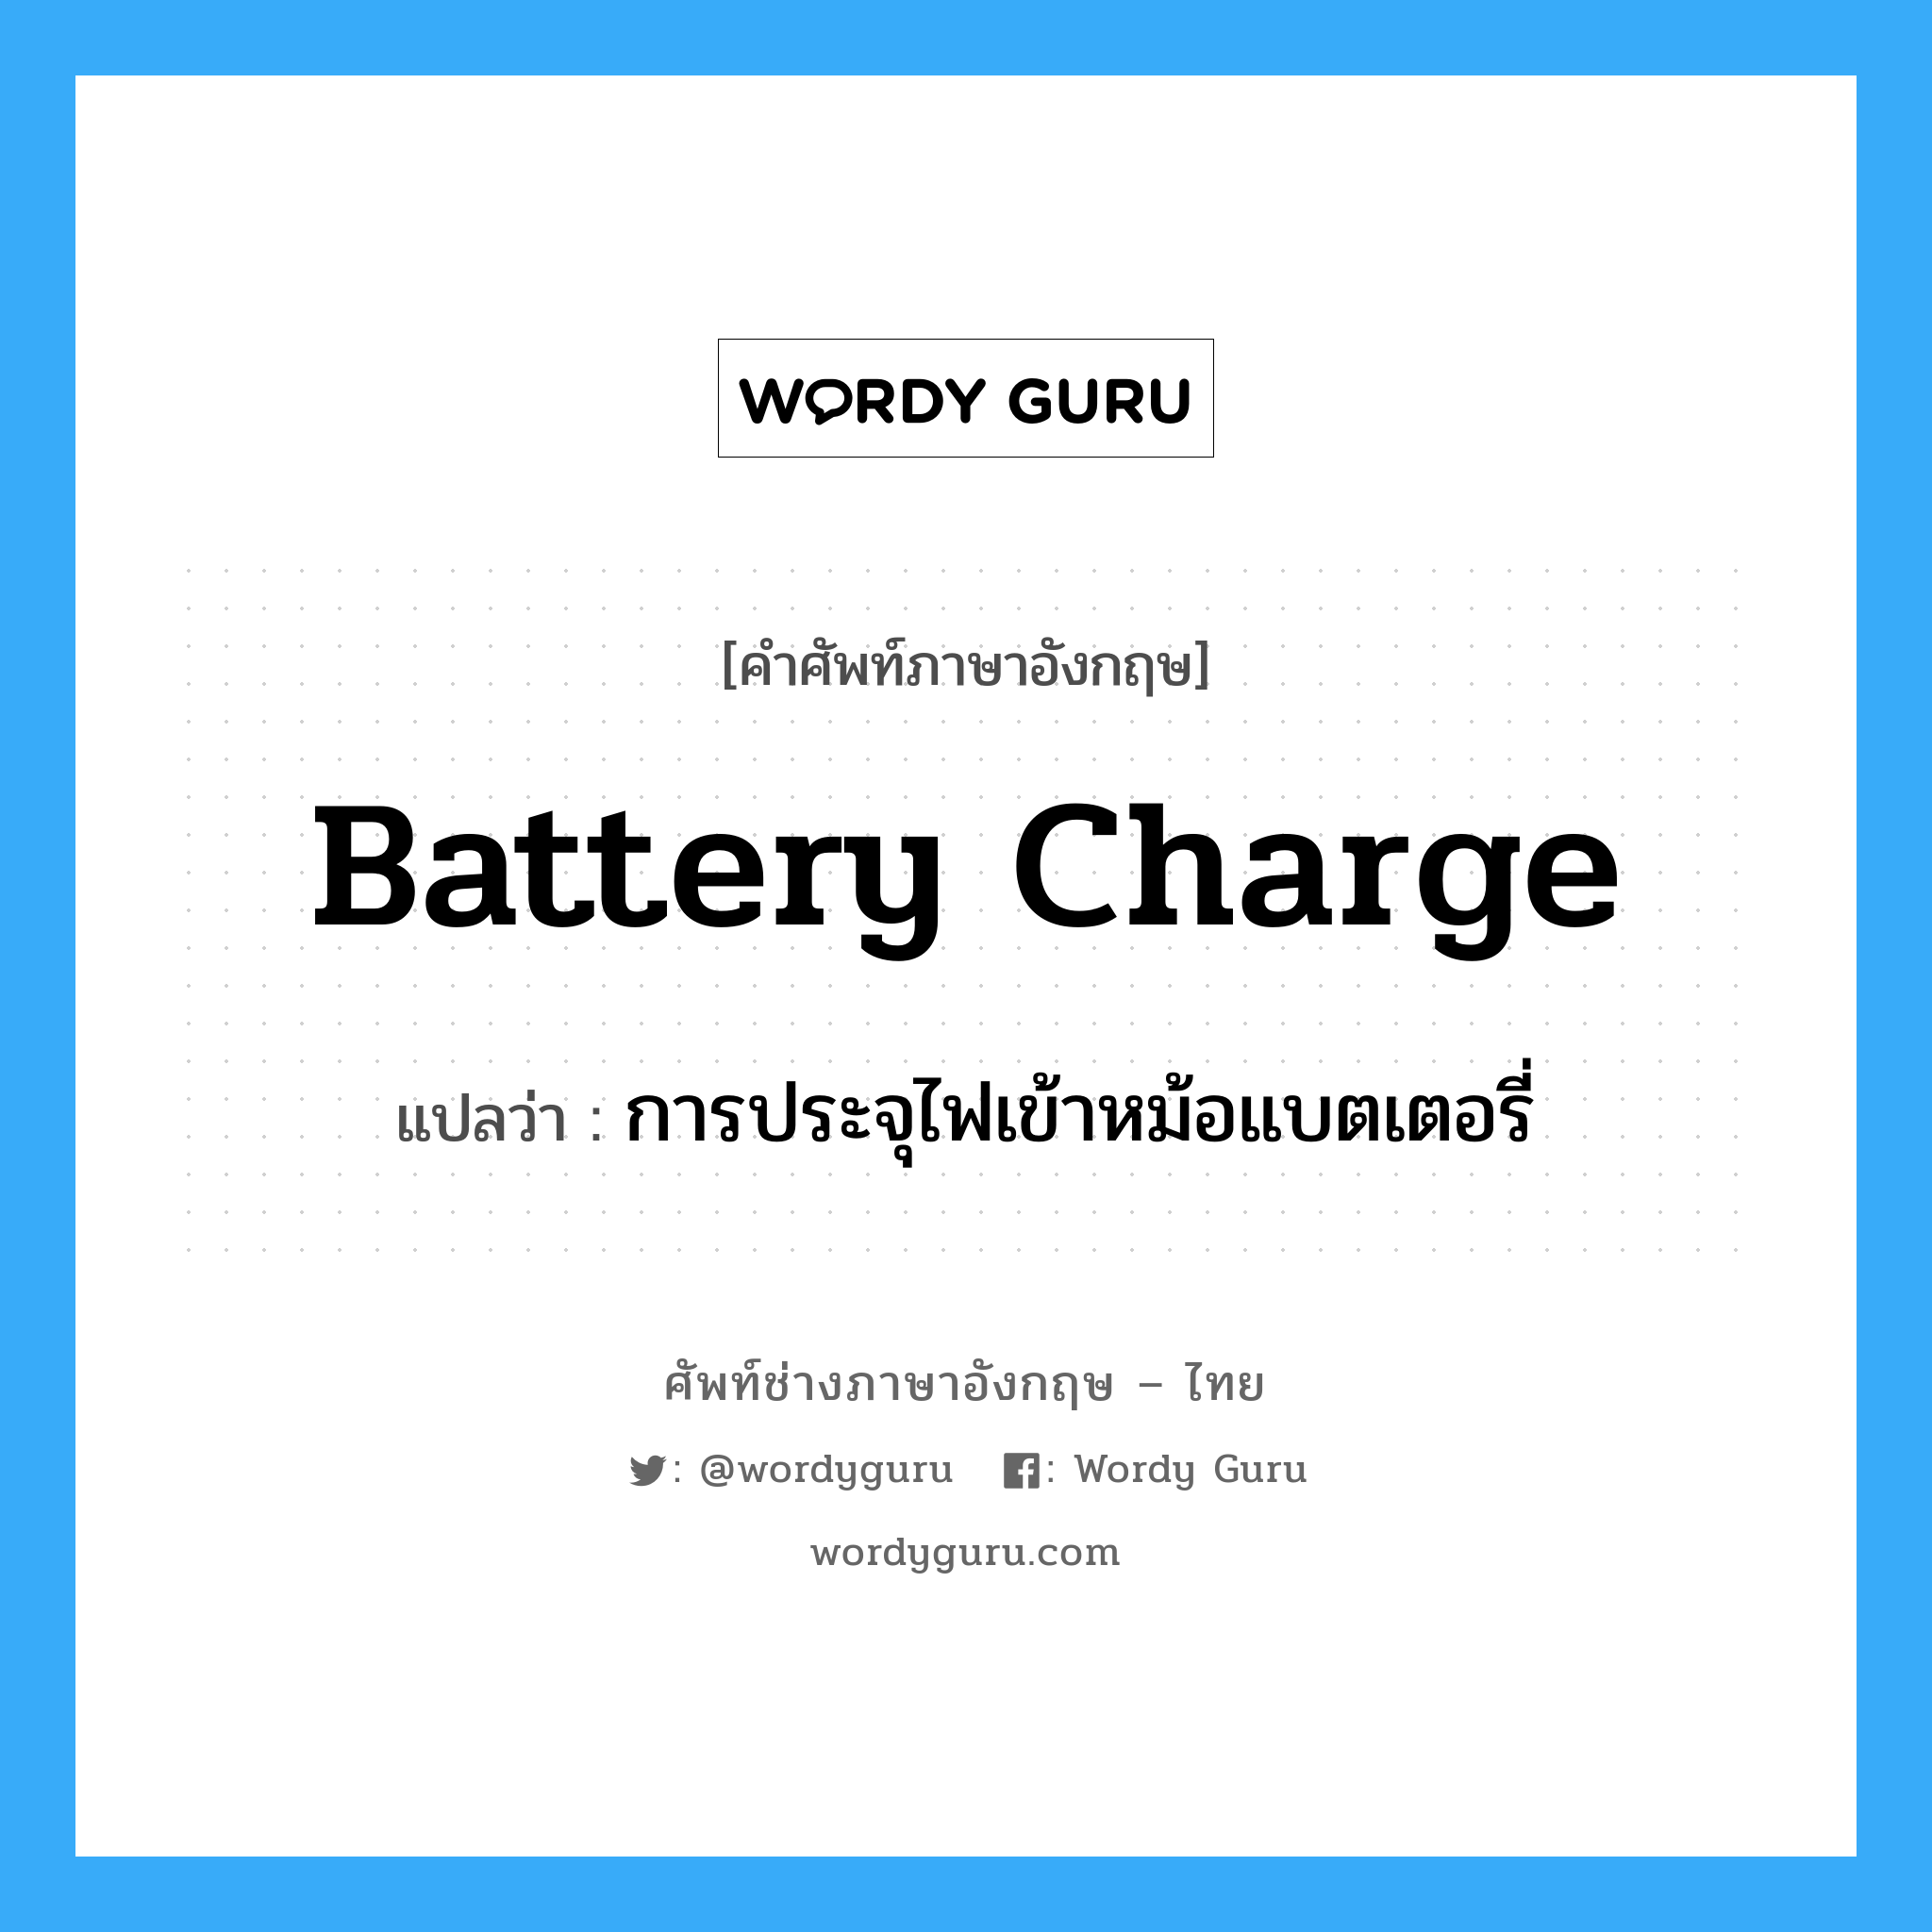 การประจุไฟเข้าหม้อแบตเตอรี่ ภาษาอังกฤษ?, คำศัพท์ช่างภาษาอังกฤษ - ไทย การประจุไฟเข้าหม้อแบตเตอรี่ คำศัพท์ภาษาอังกฤษ การประจุไฟเข้าหม้อแบตเตอรี่ แปลว่า battery charge